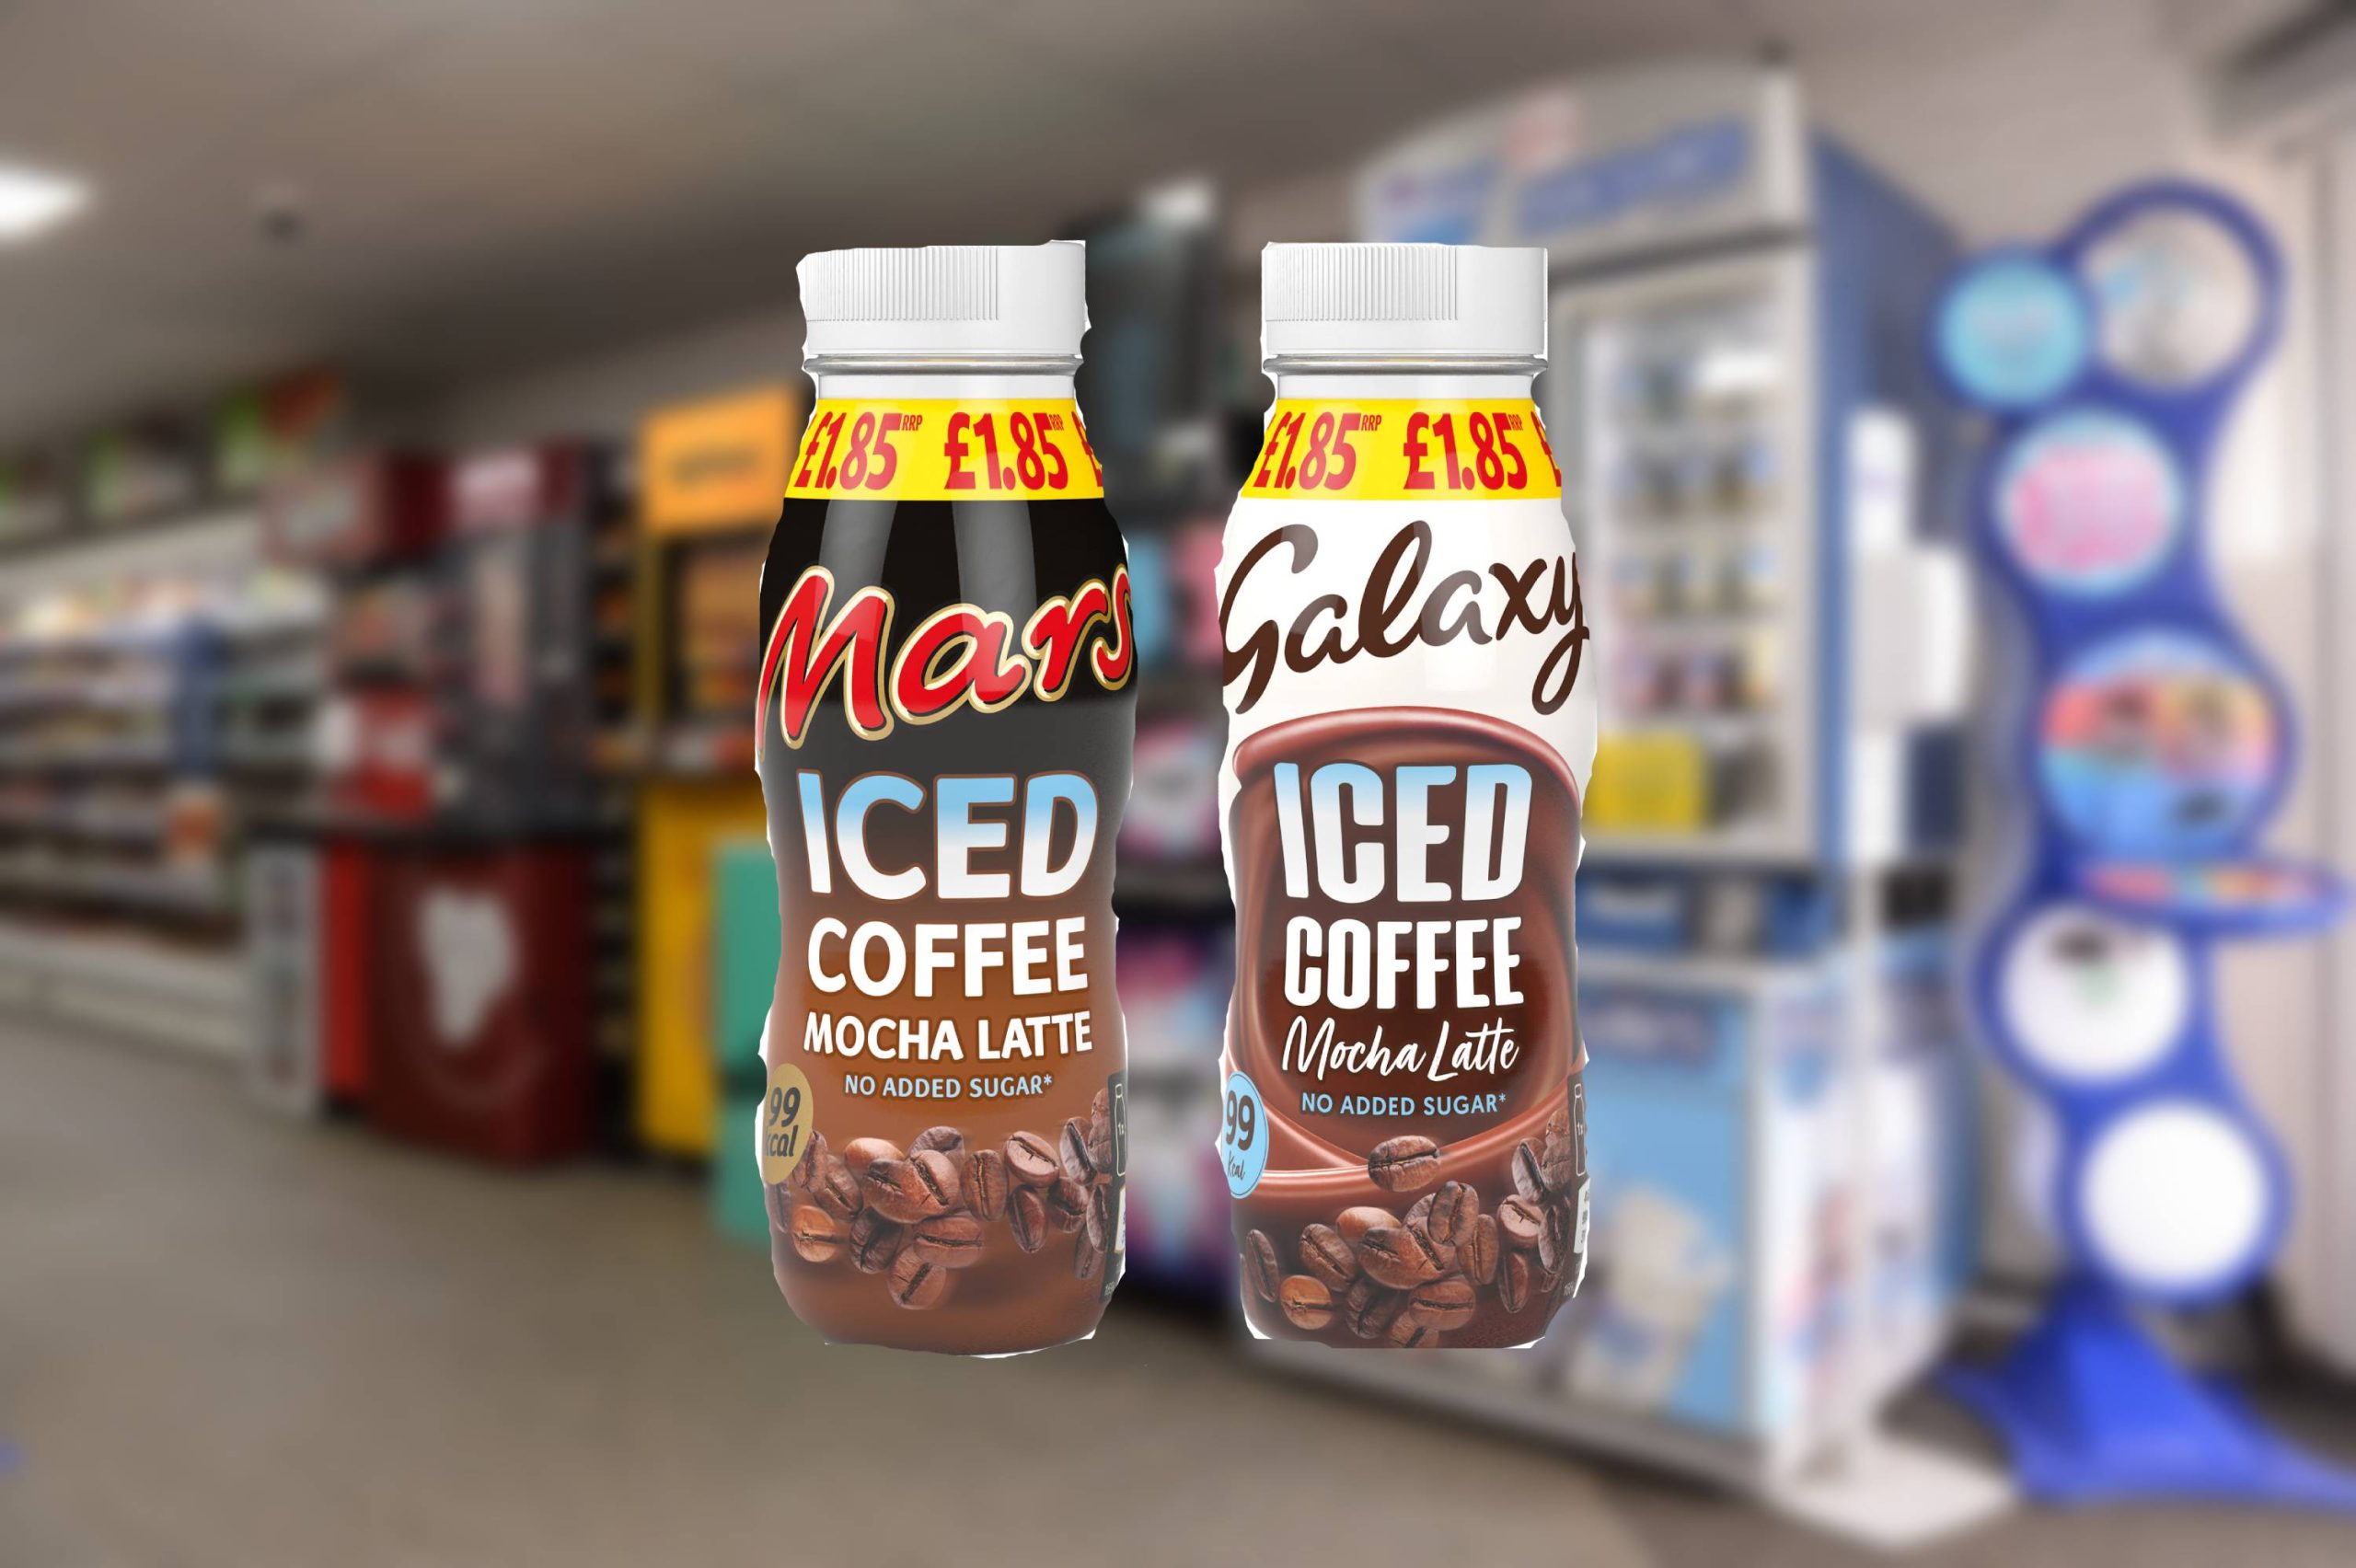 Galaxy Iced Coffee Mocha Latte